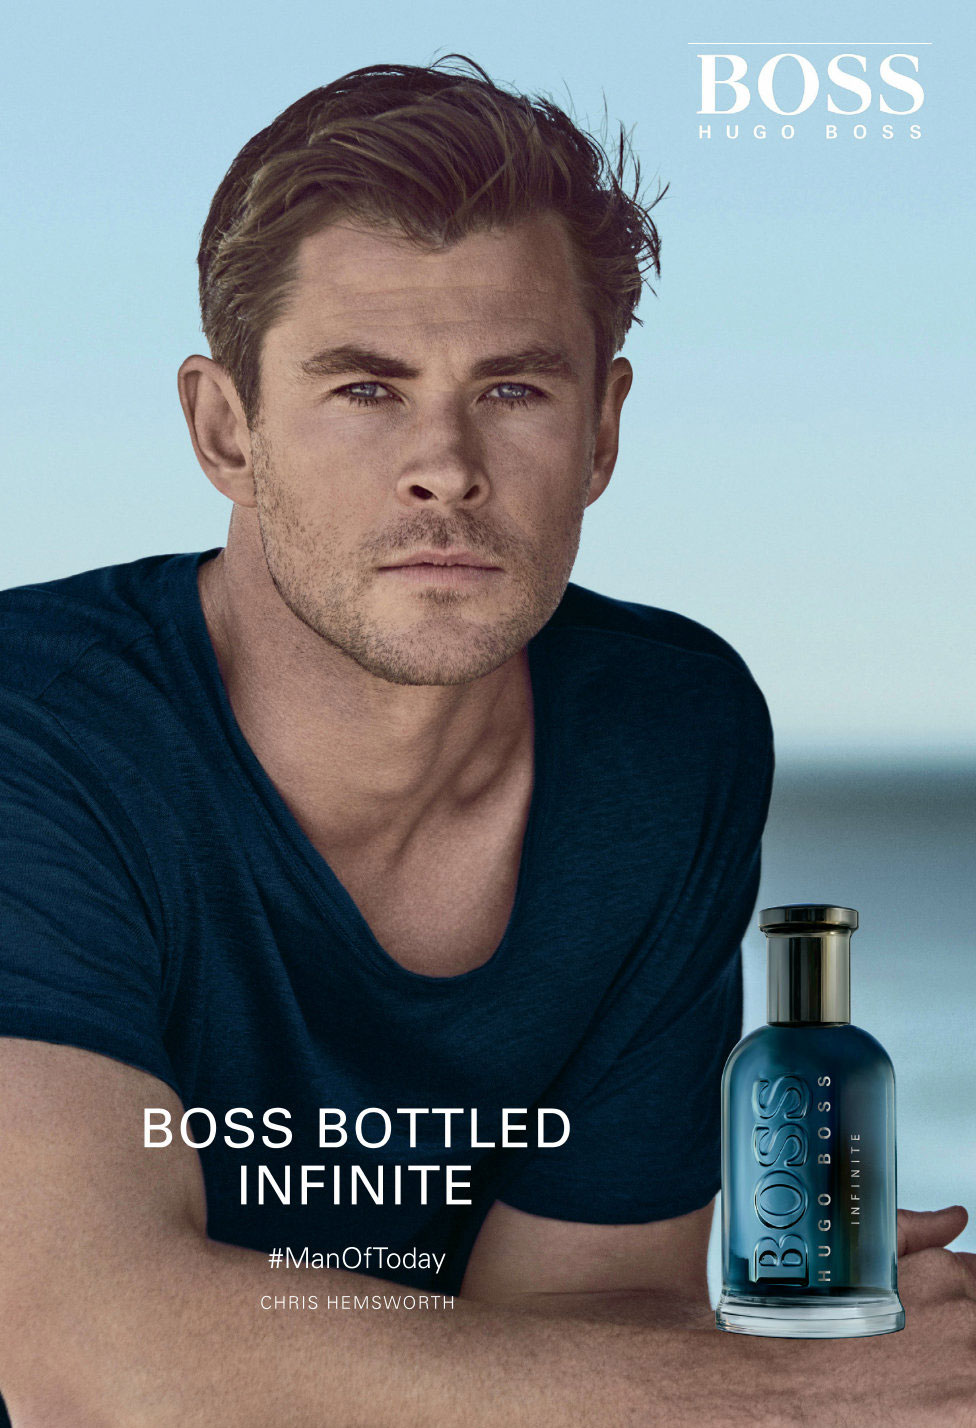 Hugo Boss BOSS Bottled Infinite Fragrance Ad